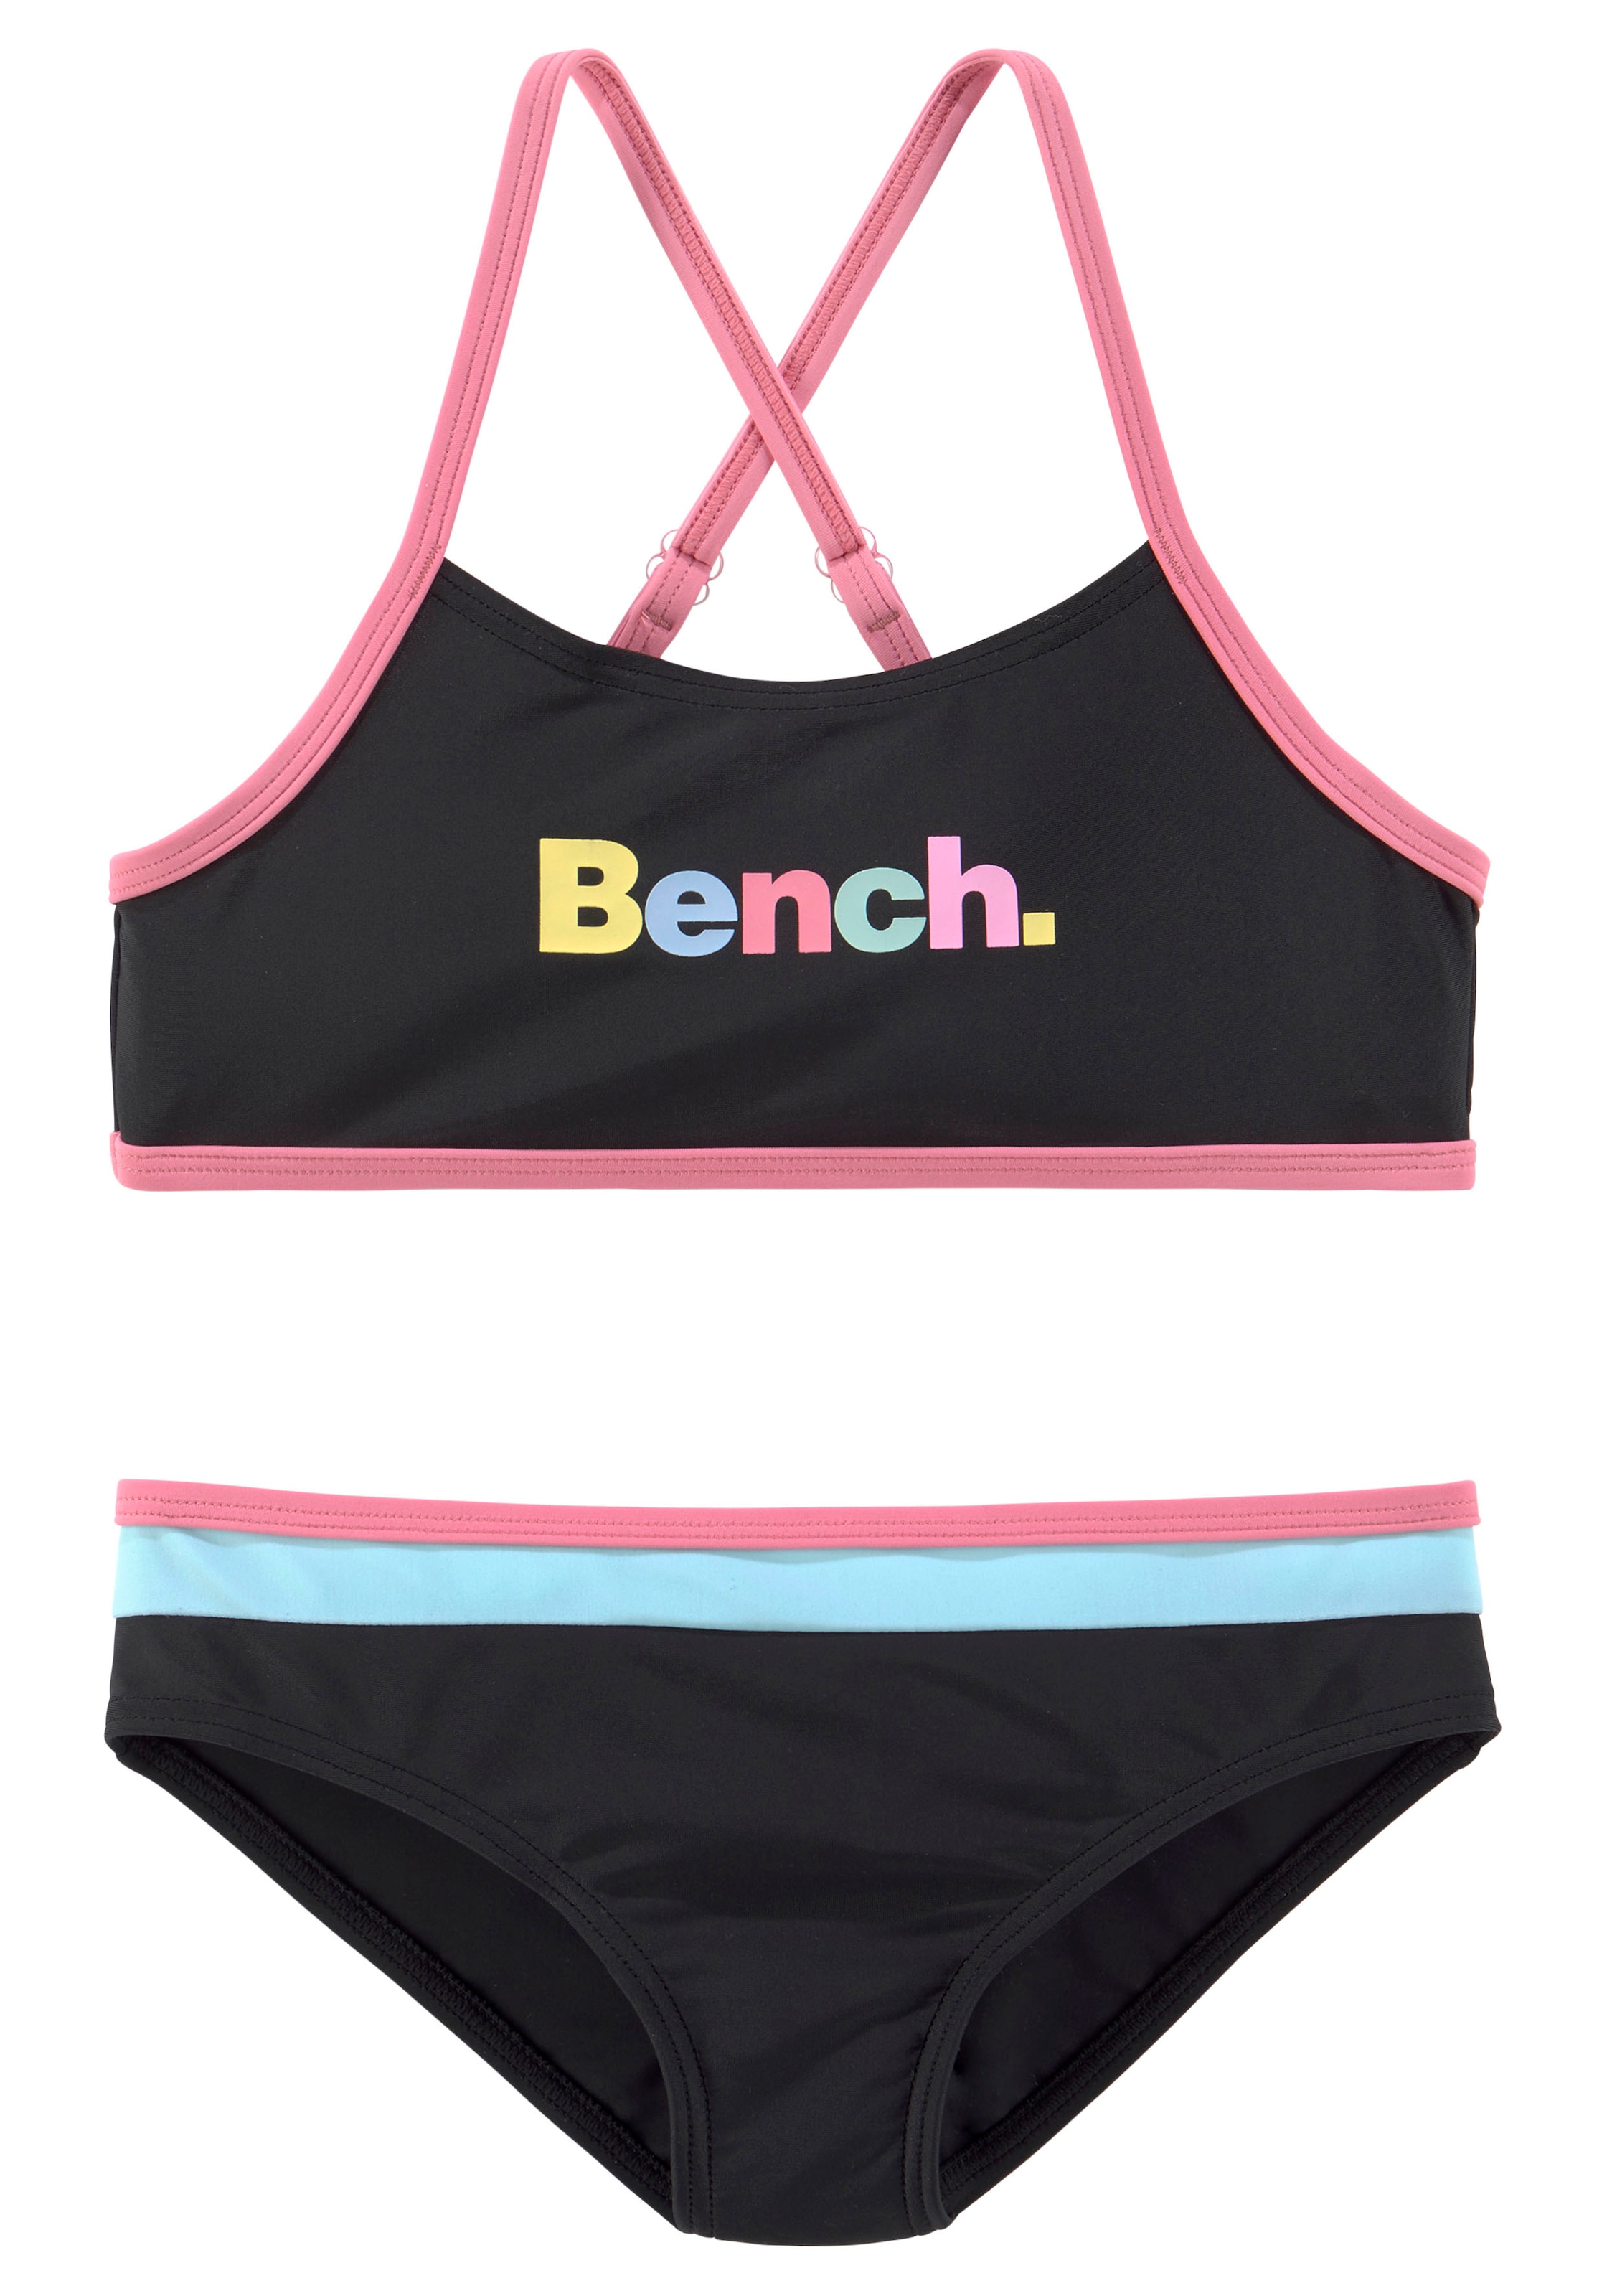 Bench. Bustier-Bikini, mit Details online bestellen bunten